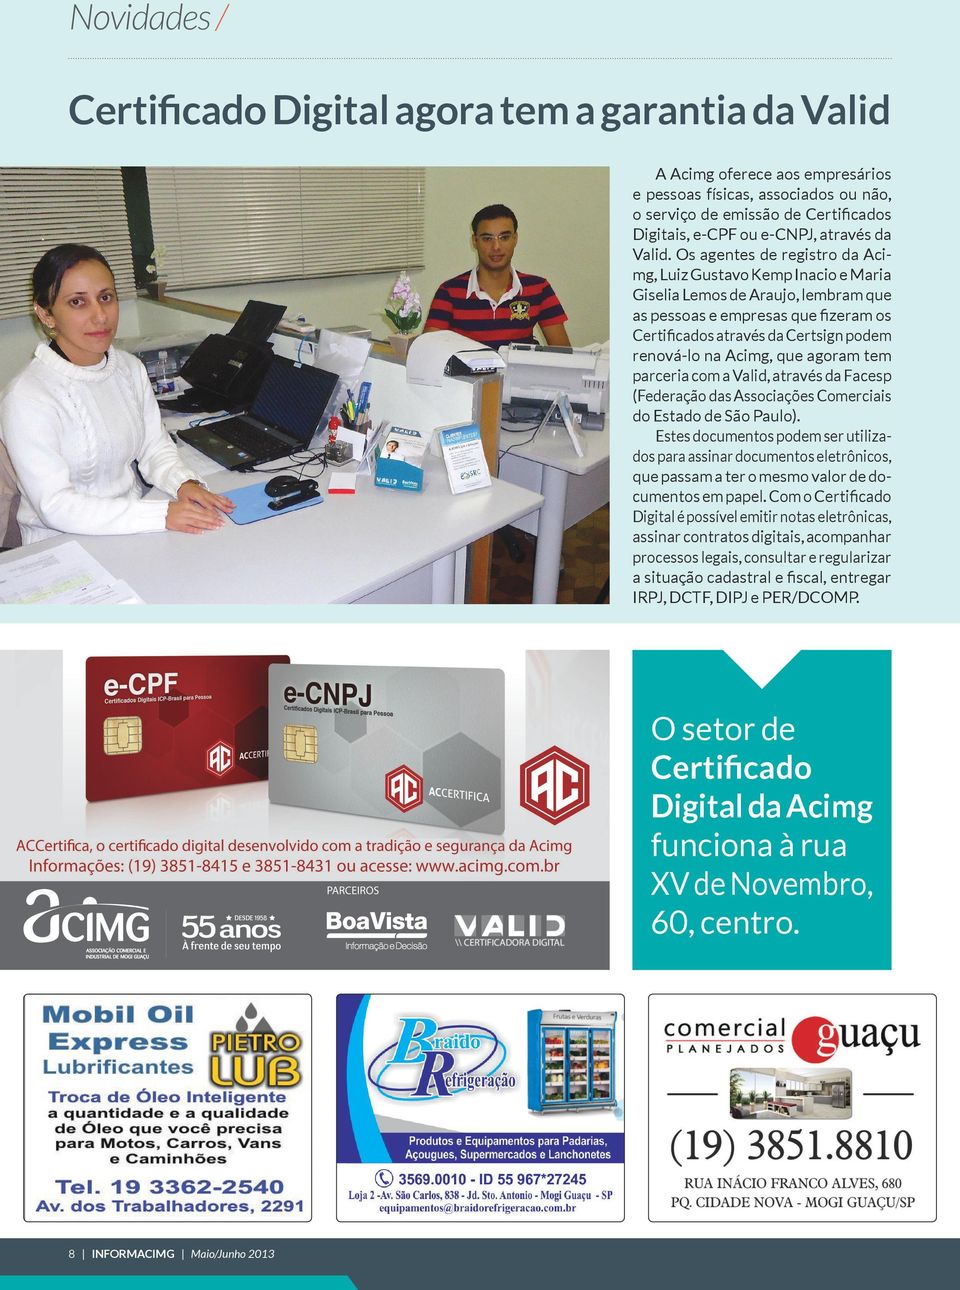 Os agentes de registro da Acimg, Luiz Gustavo Kemp Inacio e Maria Giselia Lemos de Araujo, lembram que as pessoas e empresas que fizeram os Certificados através da Certsign podem renová-lo na Acimg,